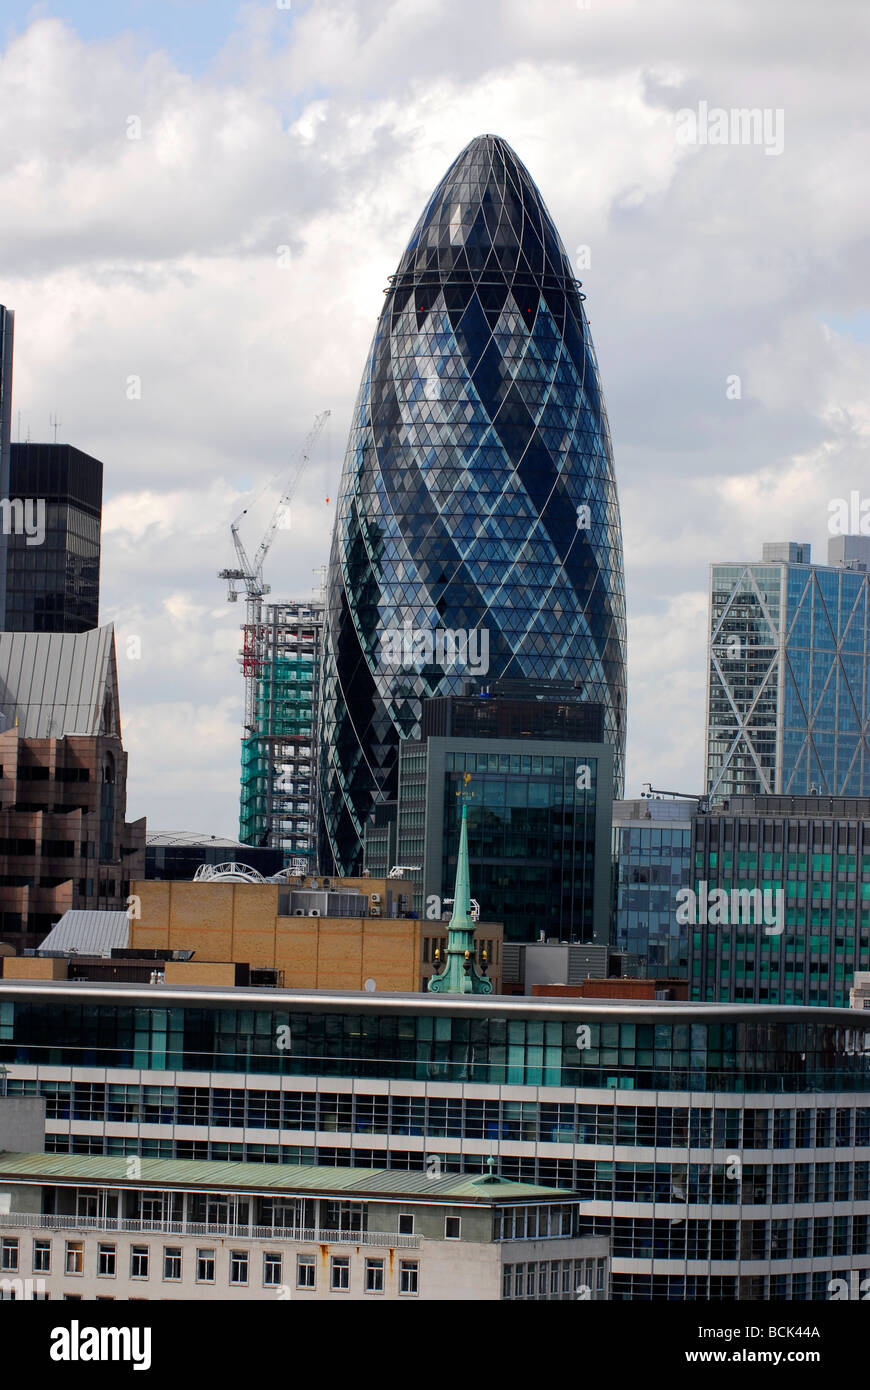 City of London zeigt eine Reihe von Unternehmen und Finanzinstitutionen, darunter das berühmte Gherkin Building, London UK. Stockfoto